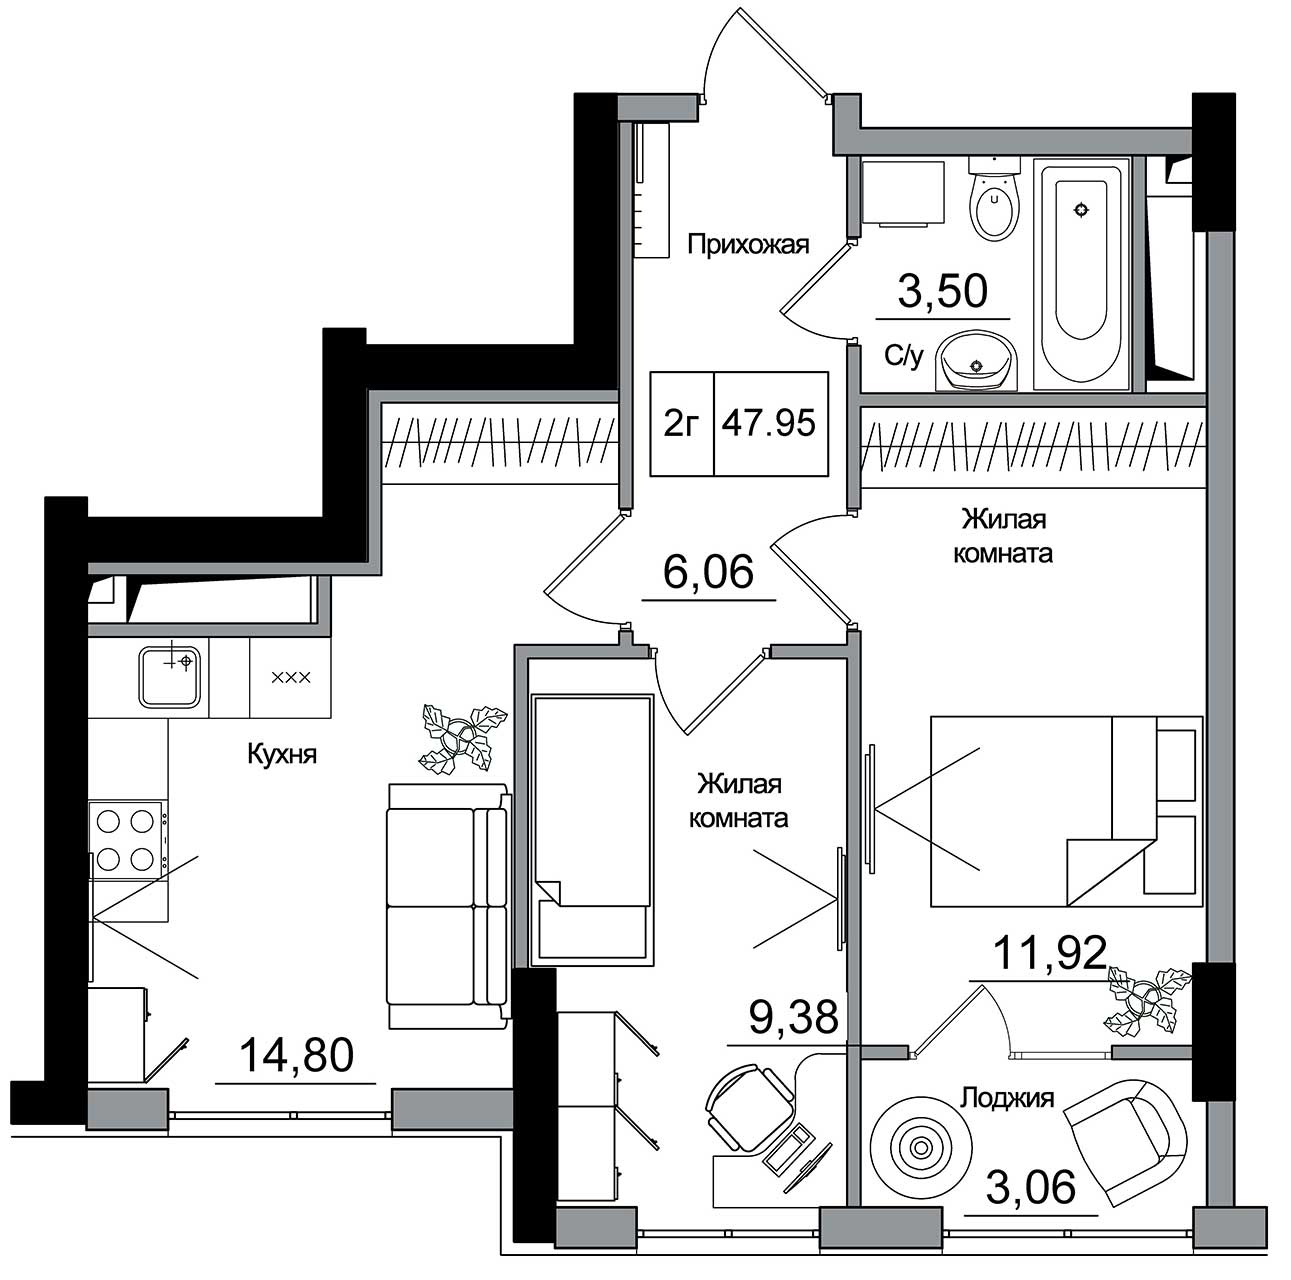 Планування 2-к квартира площею 47.95м2, AB-16-05/00014.